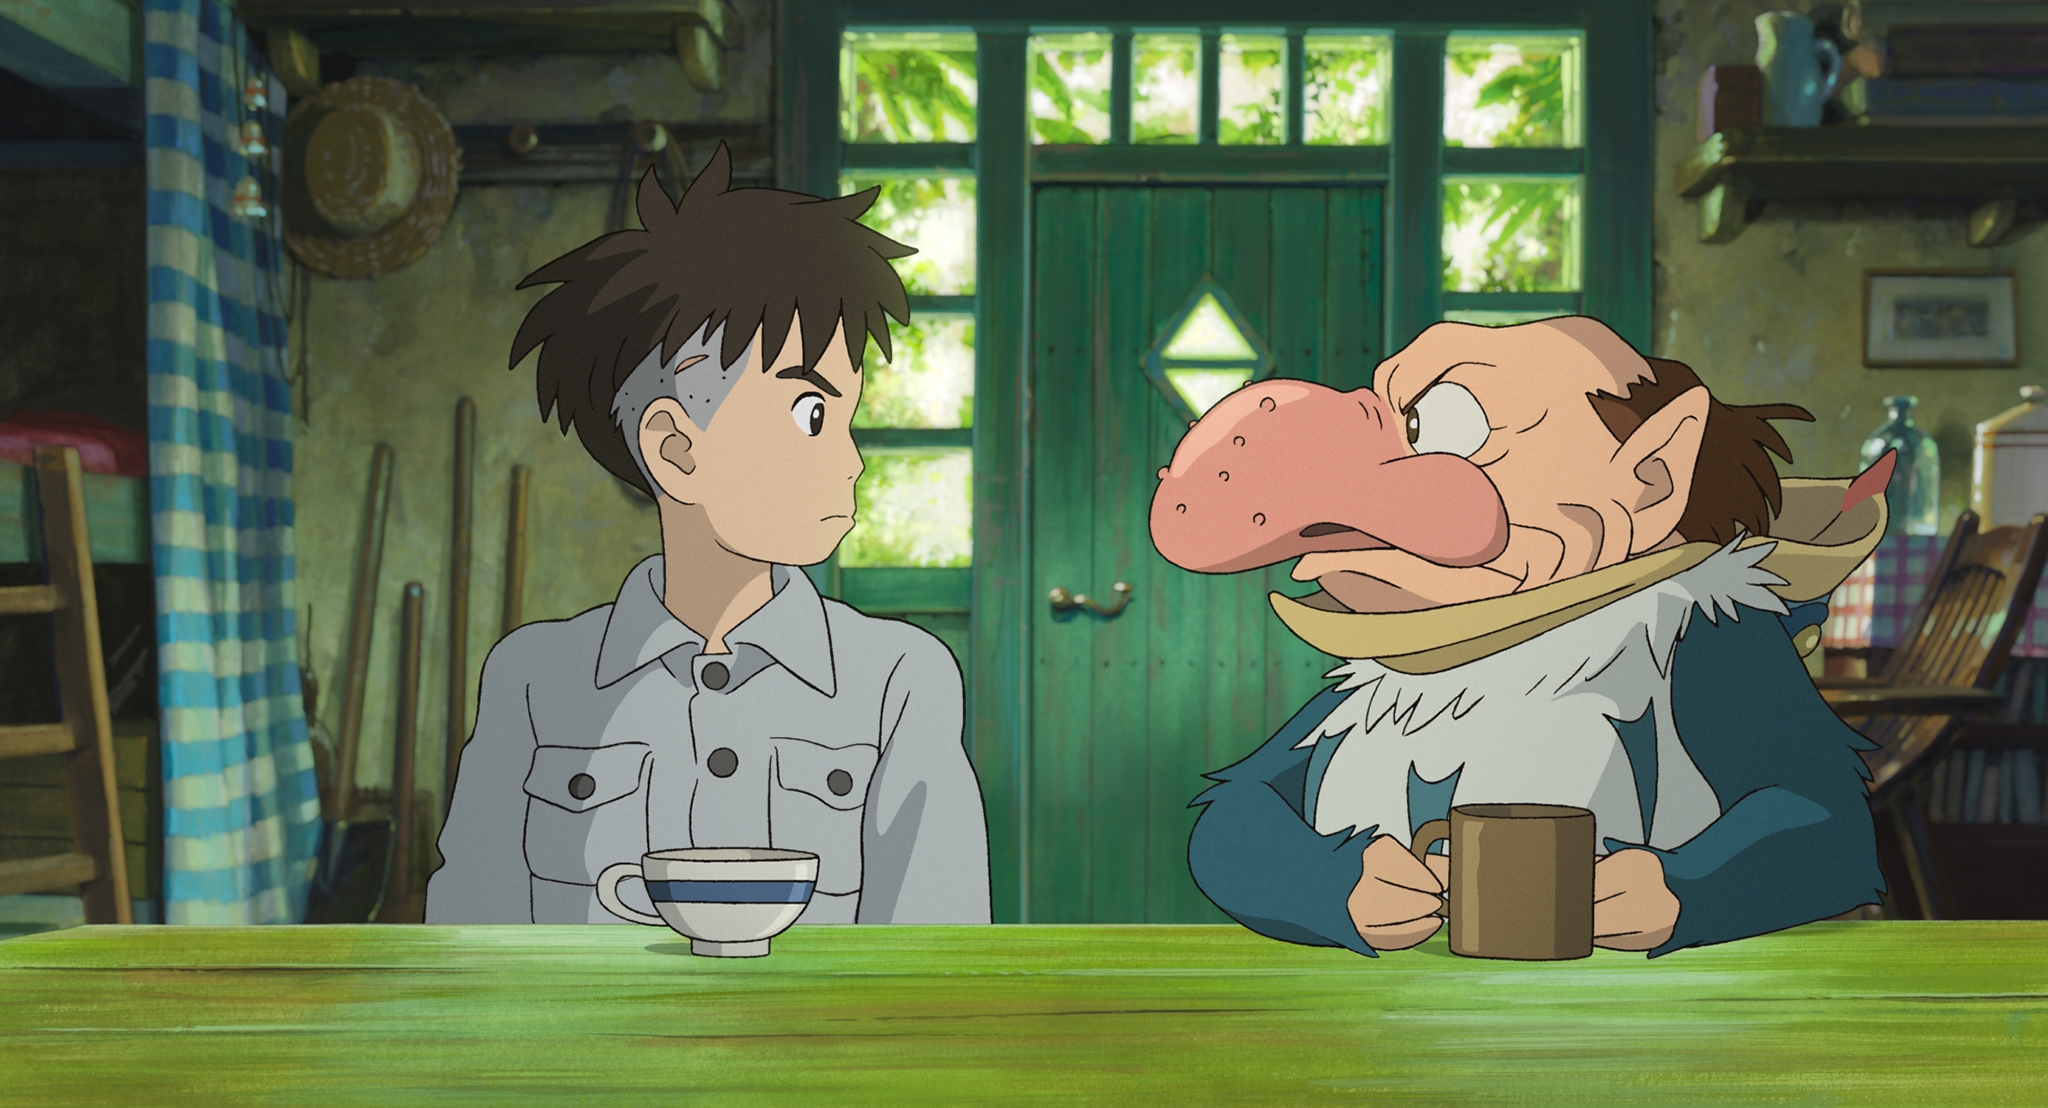 Animation eines Jungen und einer Gestalt, die wie eine Mischung aus Reiher und Mensch aussieht. Sie sitzen an einem Tresen und trinken Tee.